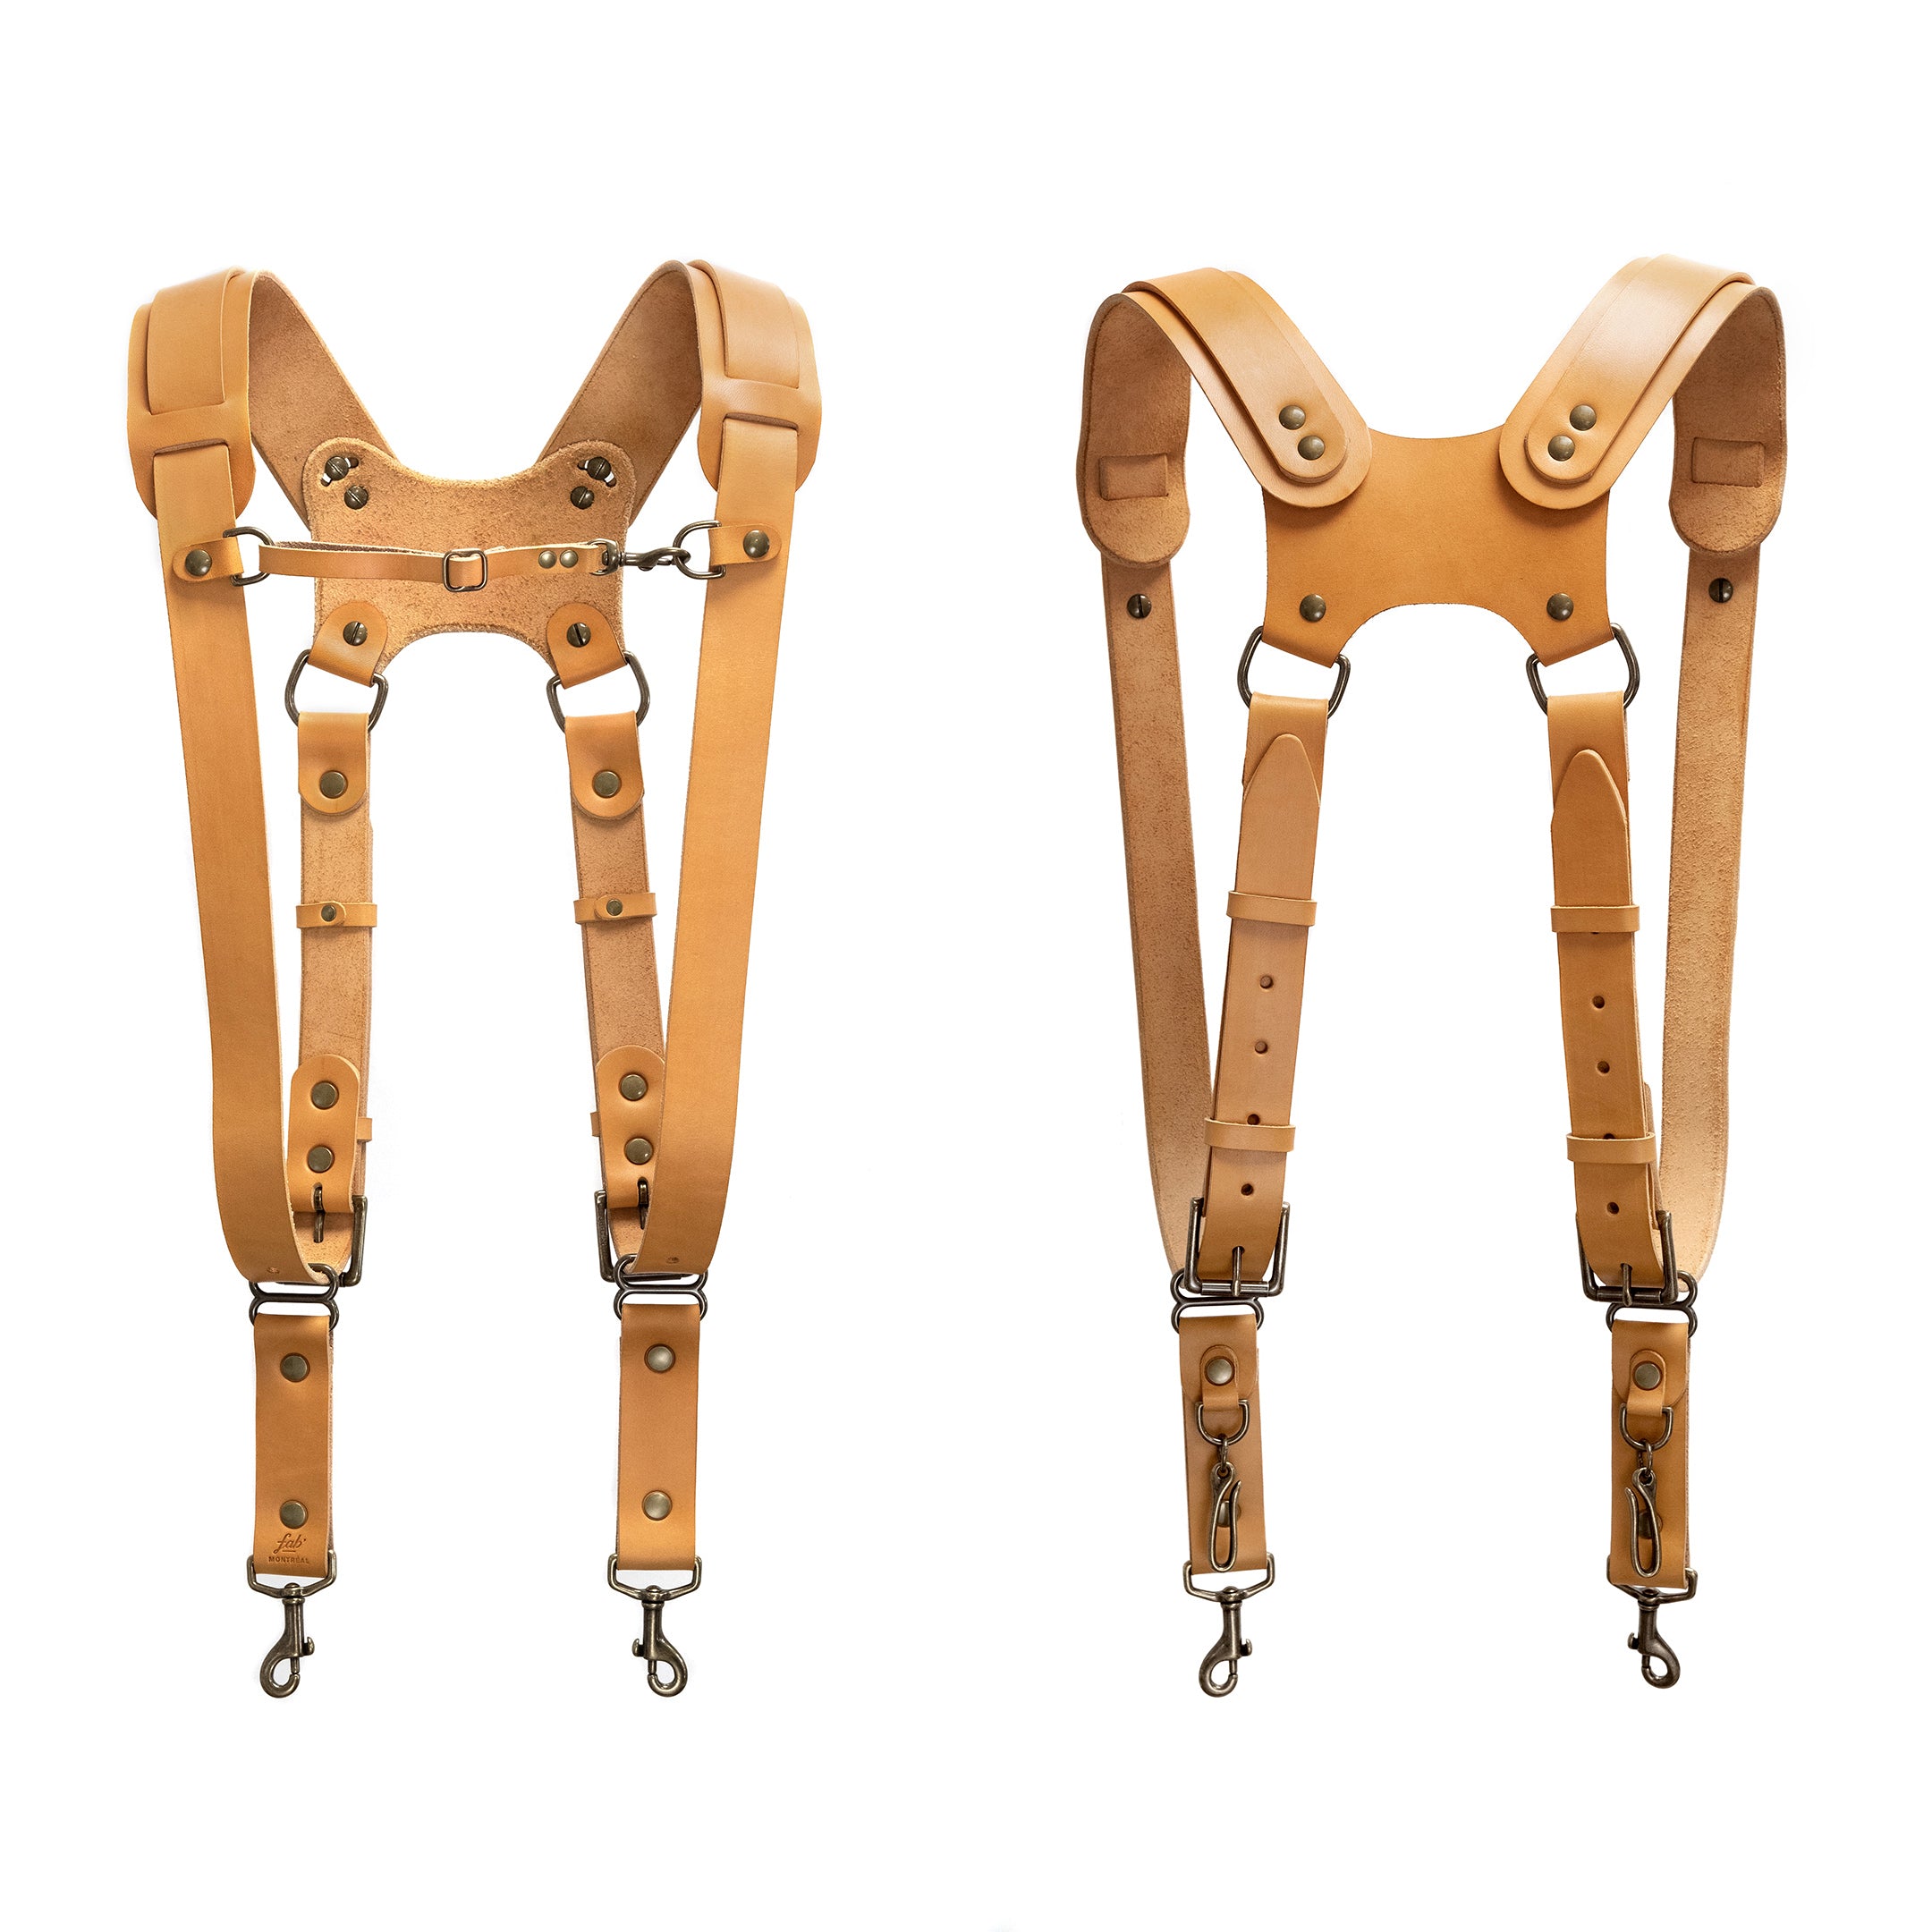 Fab' F22 harness - Tan leather - Size XL